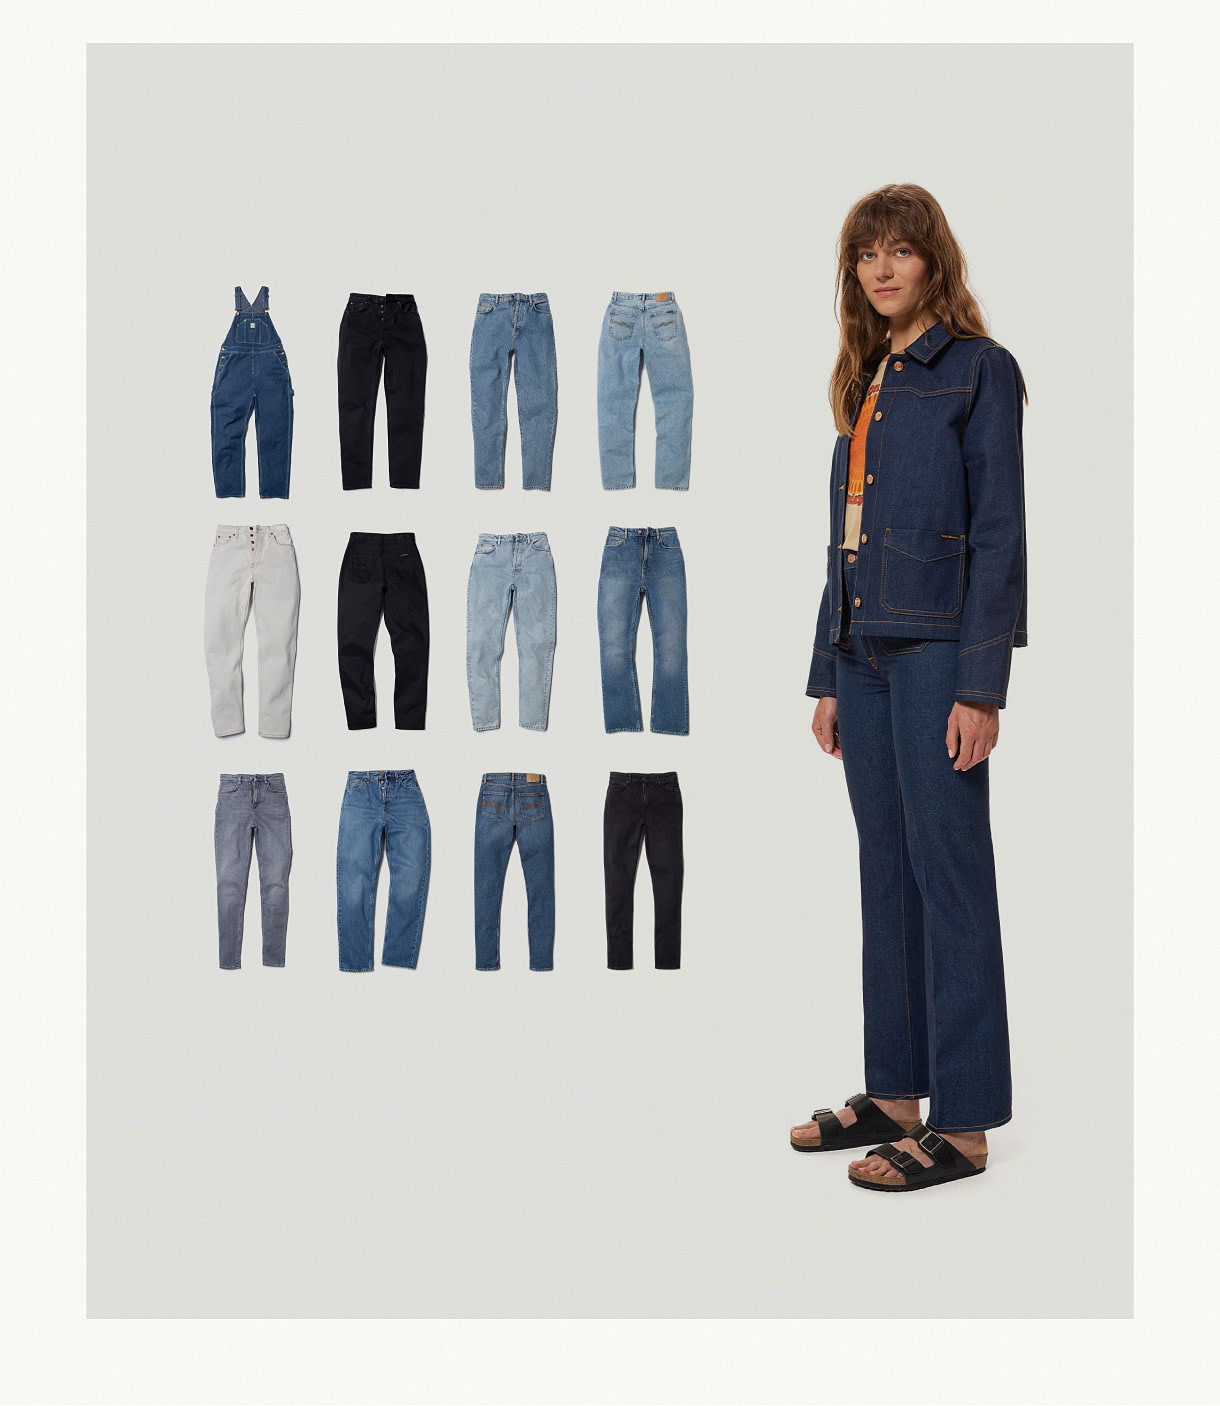 Shop women's jeans